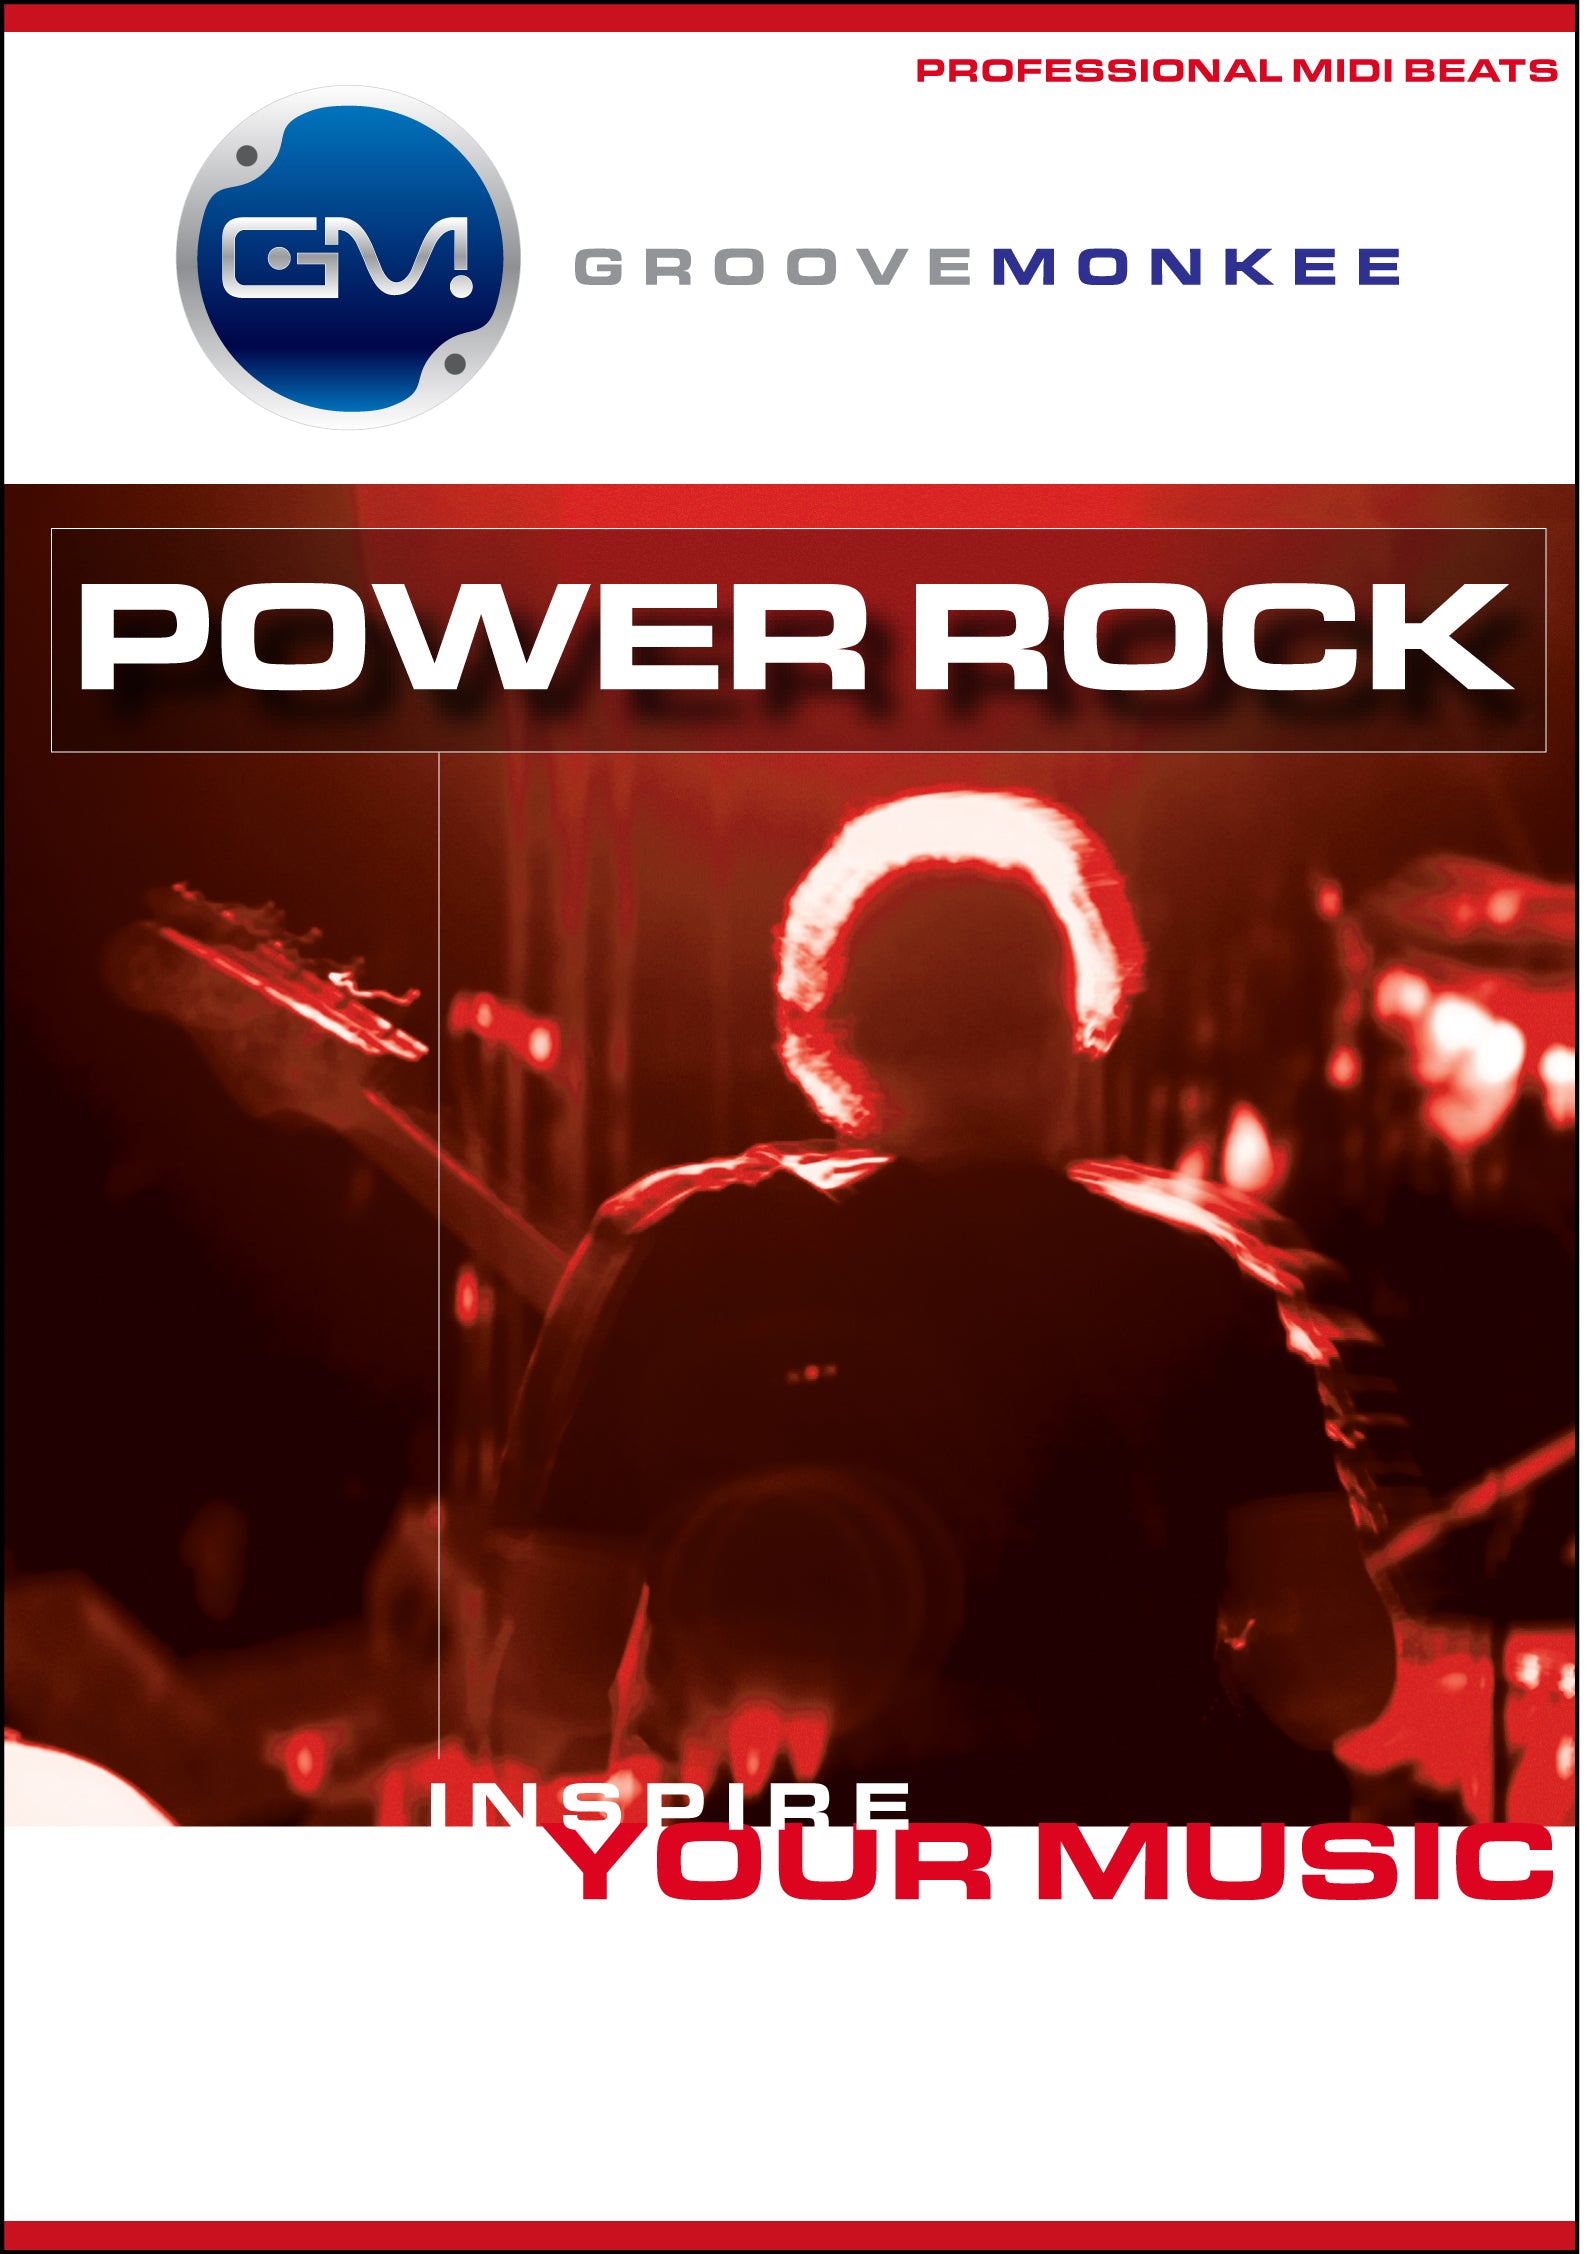 Power Rock MIDI Drum Loops